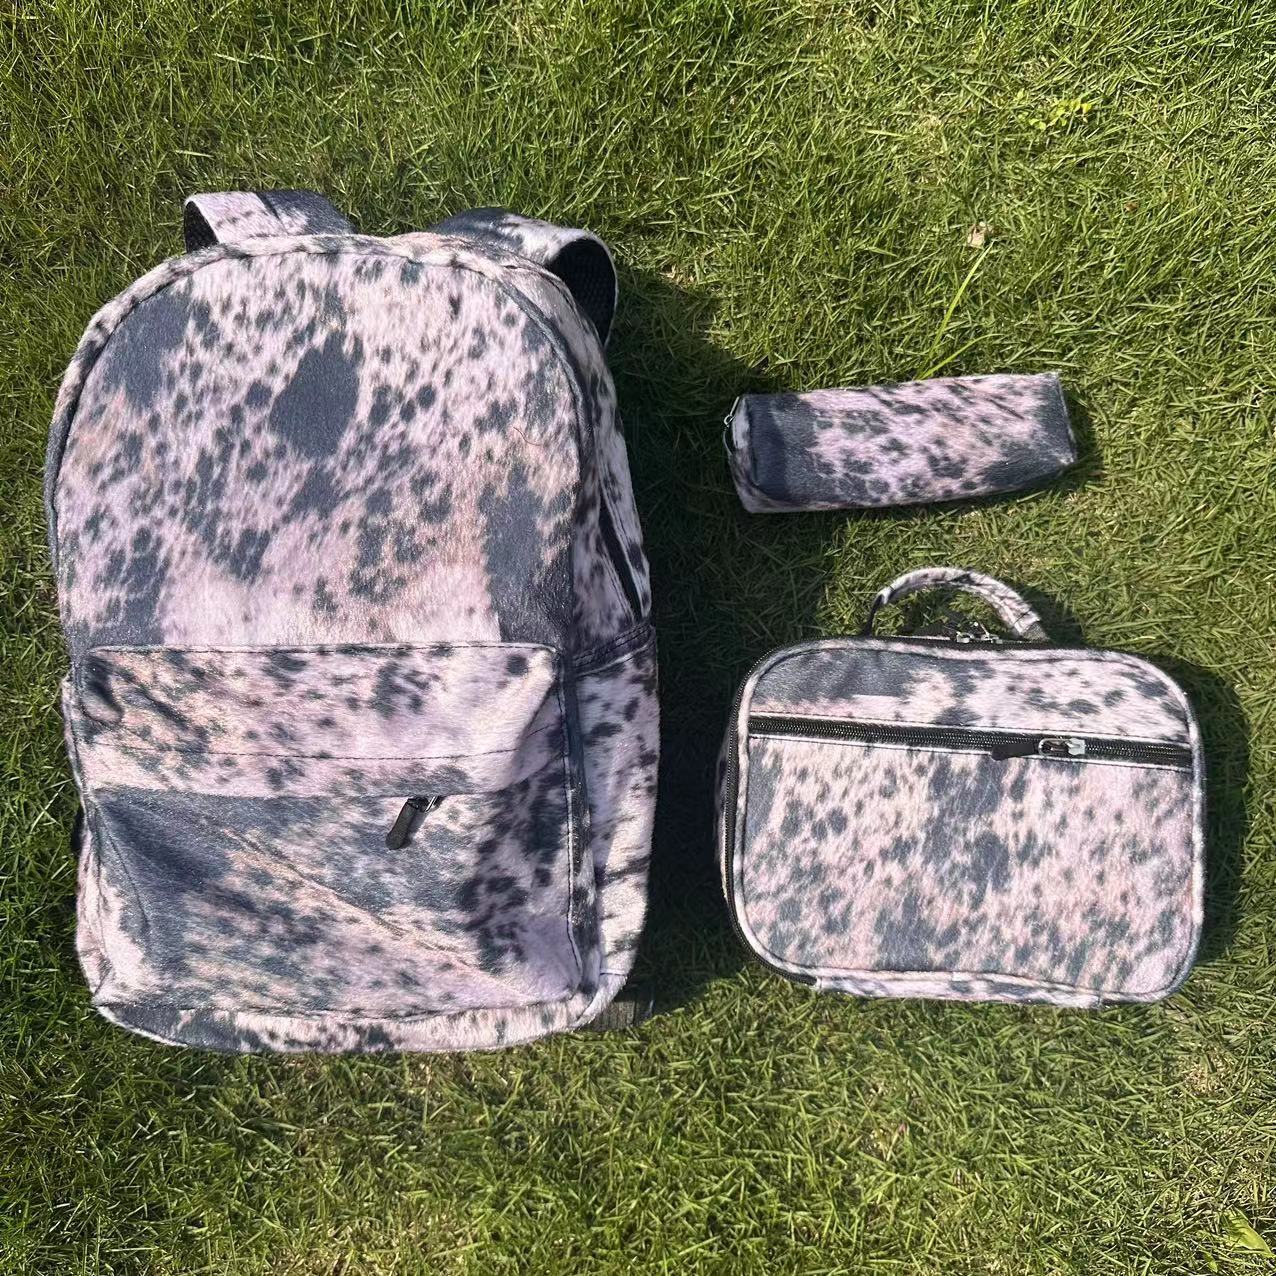 Printed Ladies Casual Backpack Set